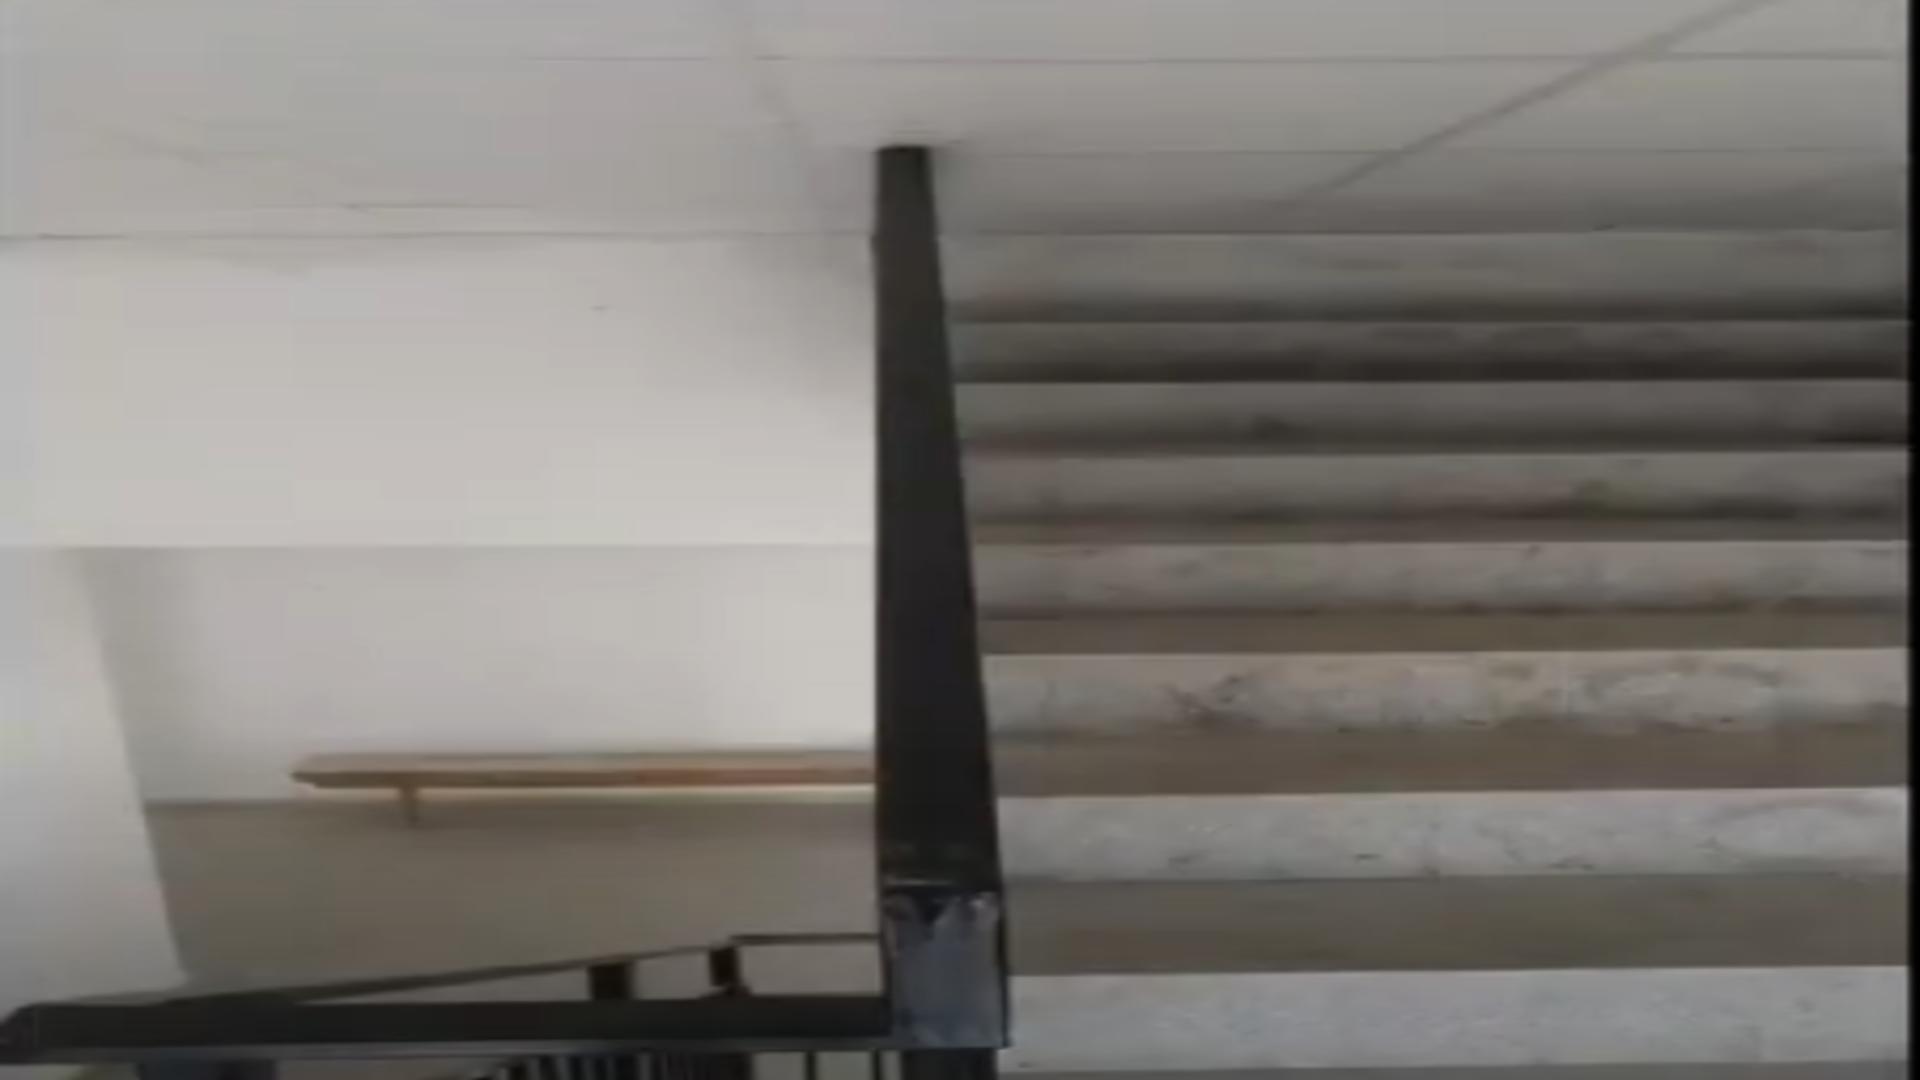 Clădire nouă cu scări care duc nicăieri